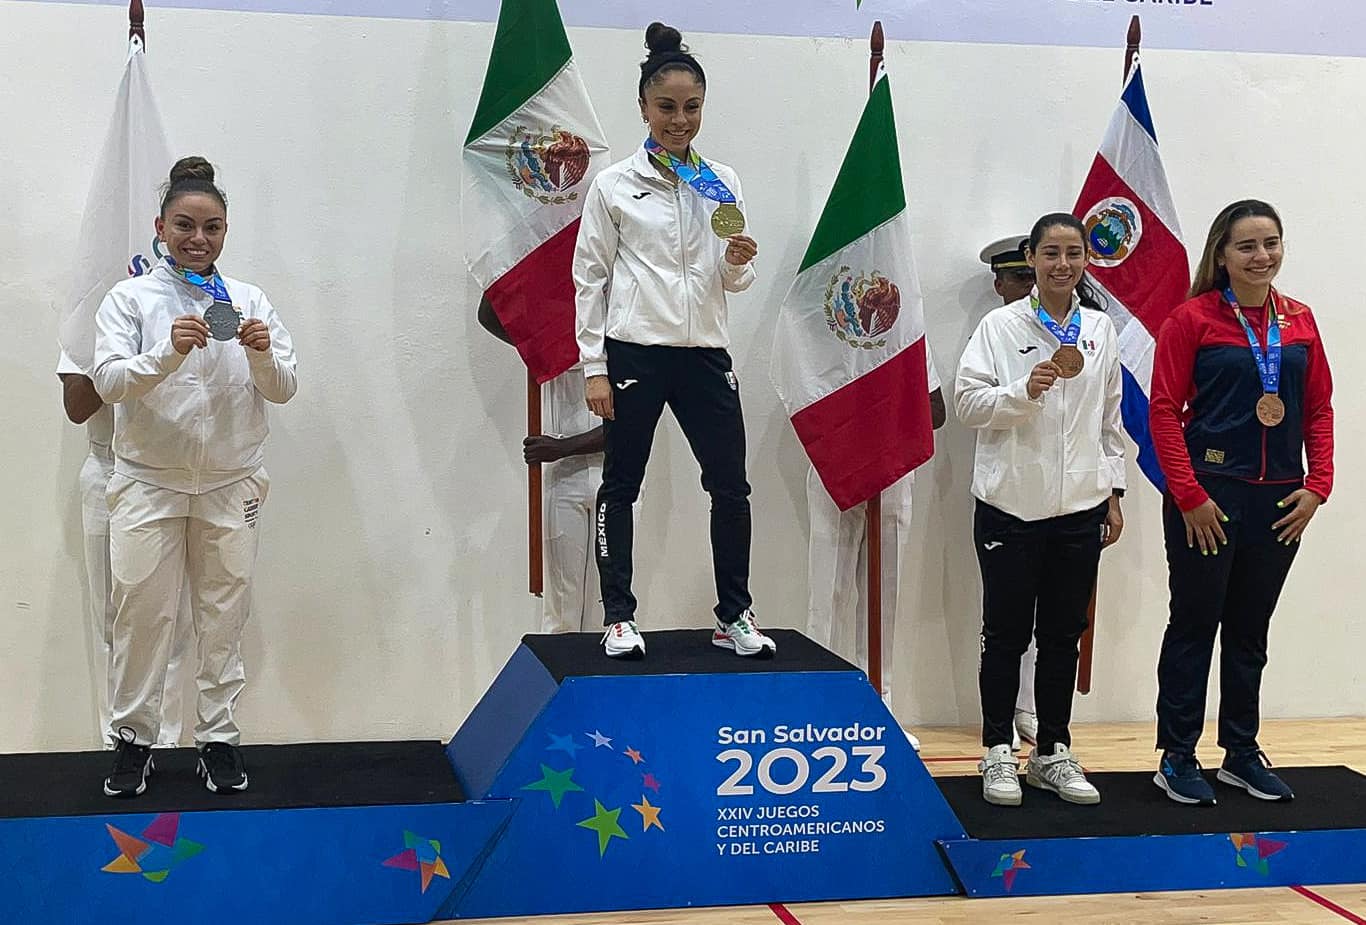 El equipo de Guatemala, que participa contra Centro Caribe Sports, se adjudicaron tres platas y dos bronces en el deporte de ráquetbol. (Foto Asociación de Ráquetbol).